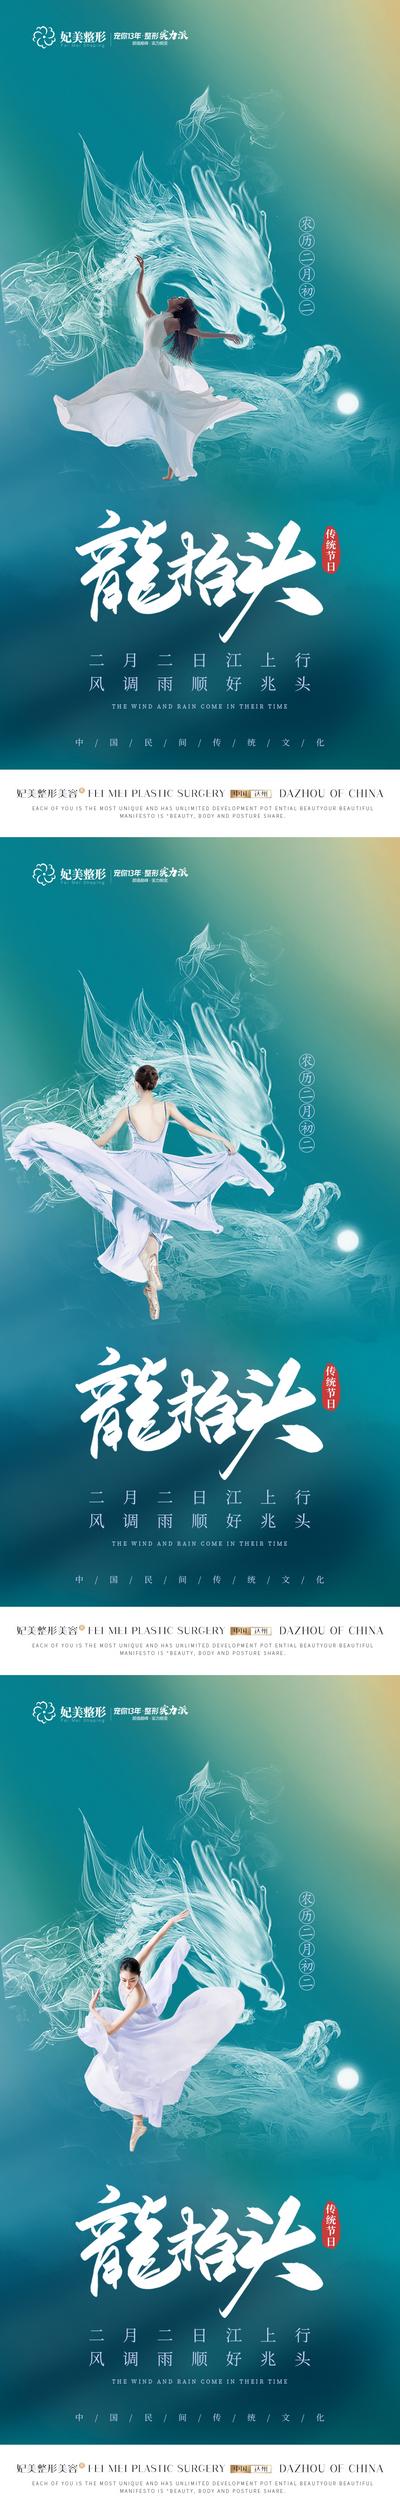 南门网 海报 医美 美容 整形 中国传统节日 二月二 龙抬头 人物 龙腾 舞蹈 系列 